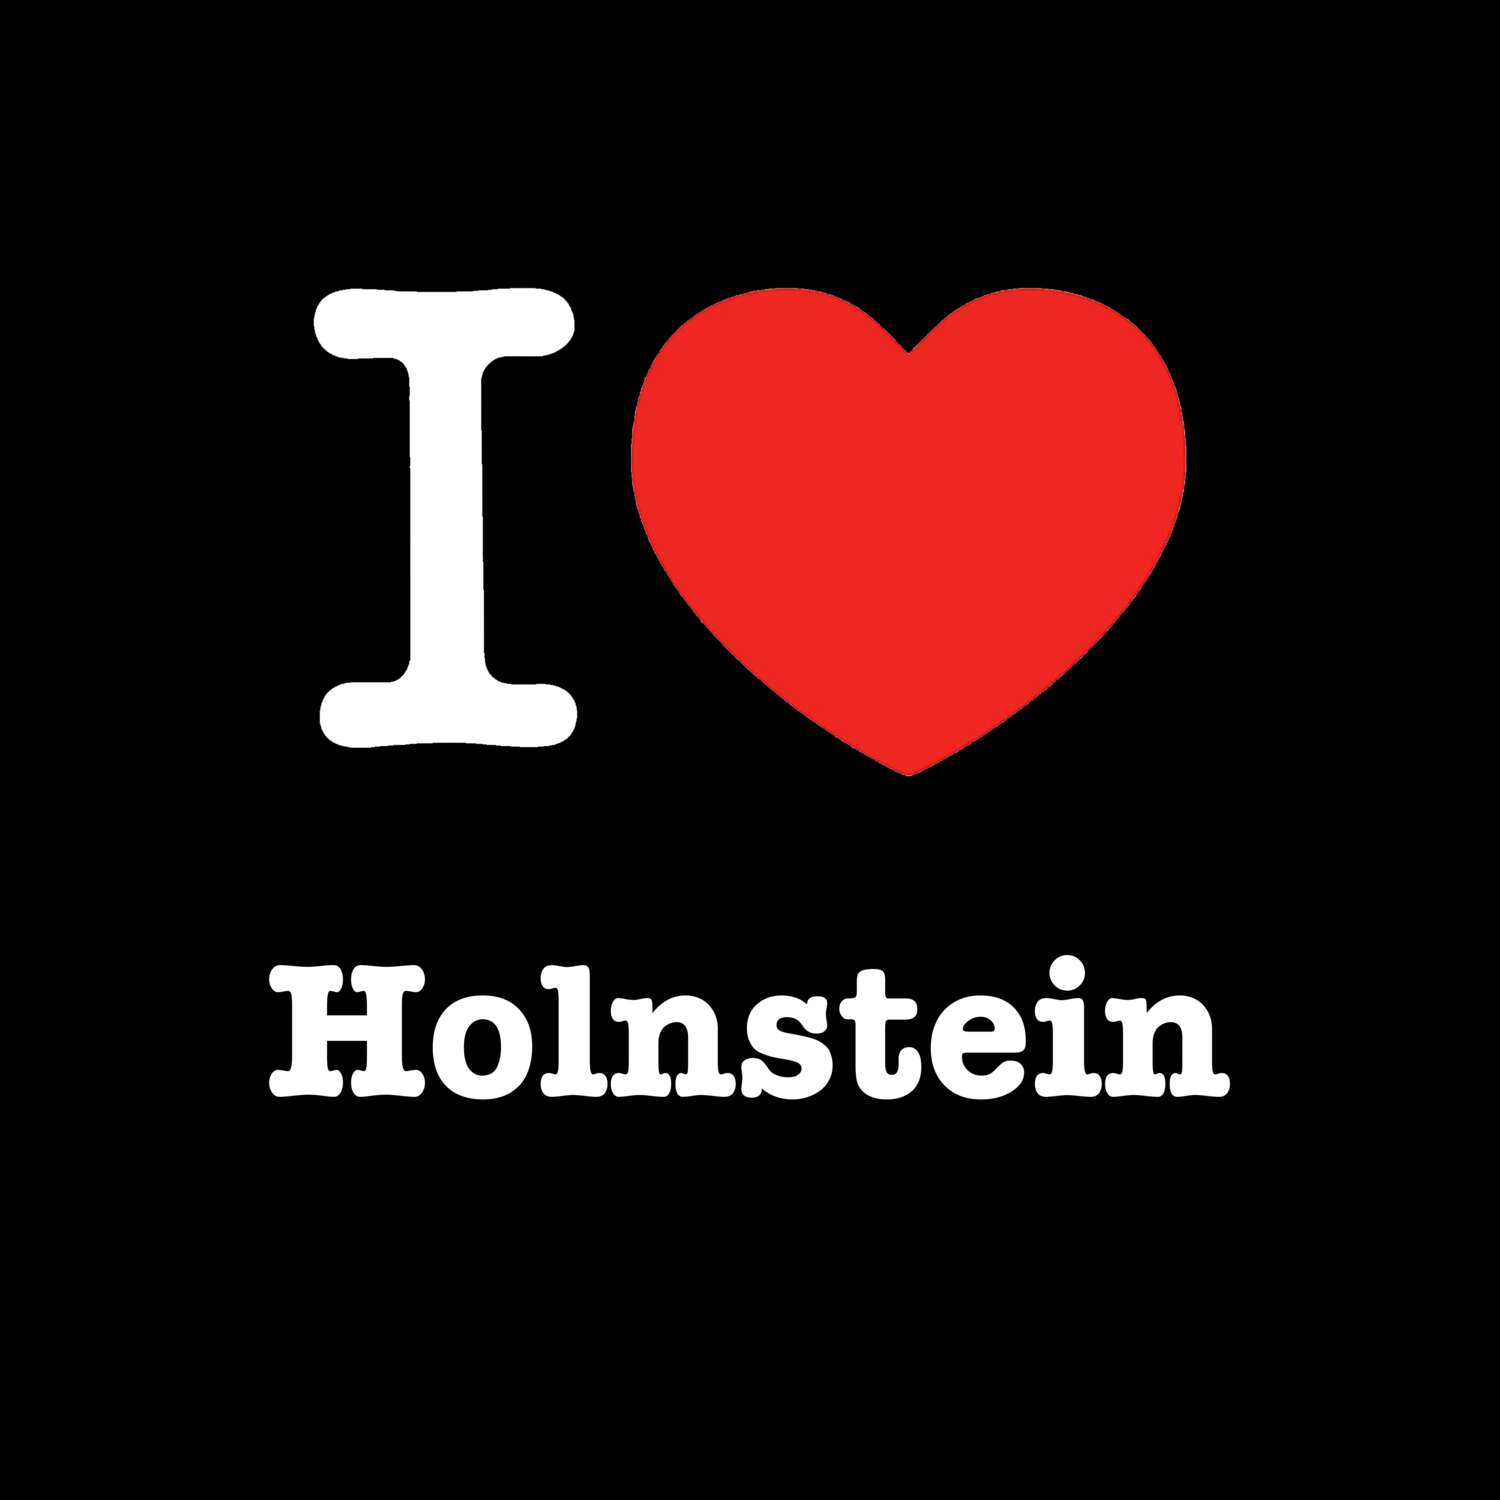 Holnstein T-Shirt »I love«